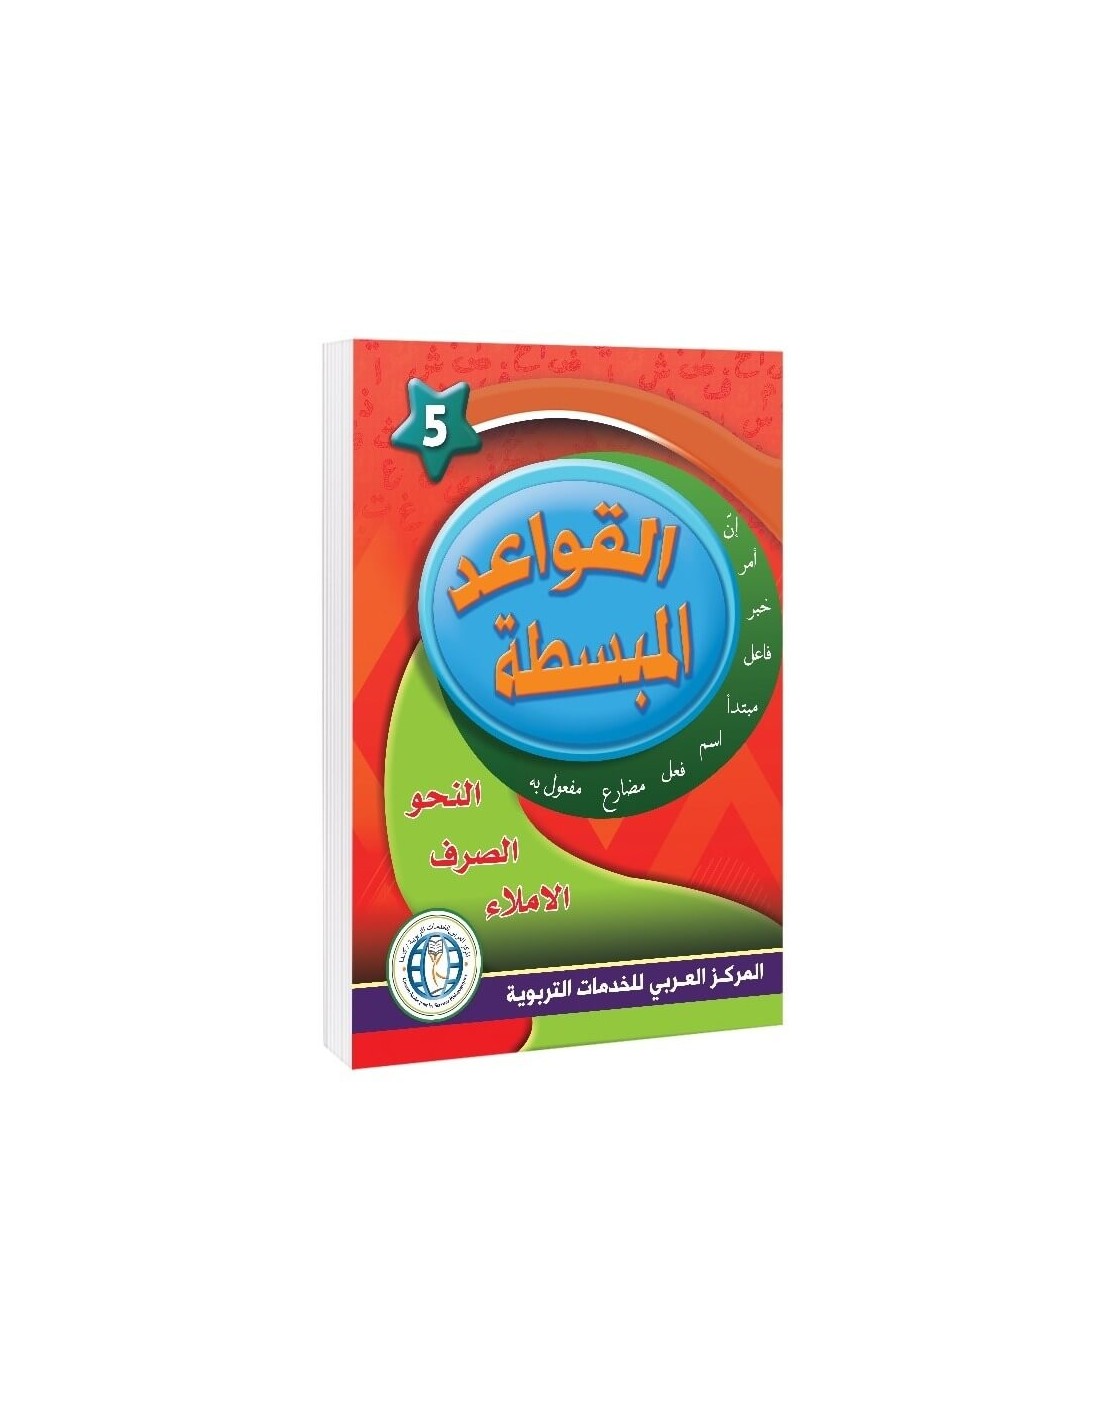 In the Arabic Language Garden - Easy Grammar: Level 5 - في حديقة اللغة العربية